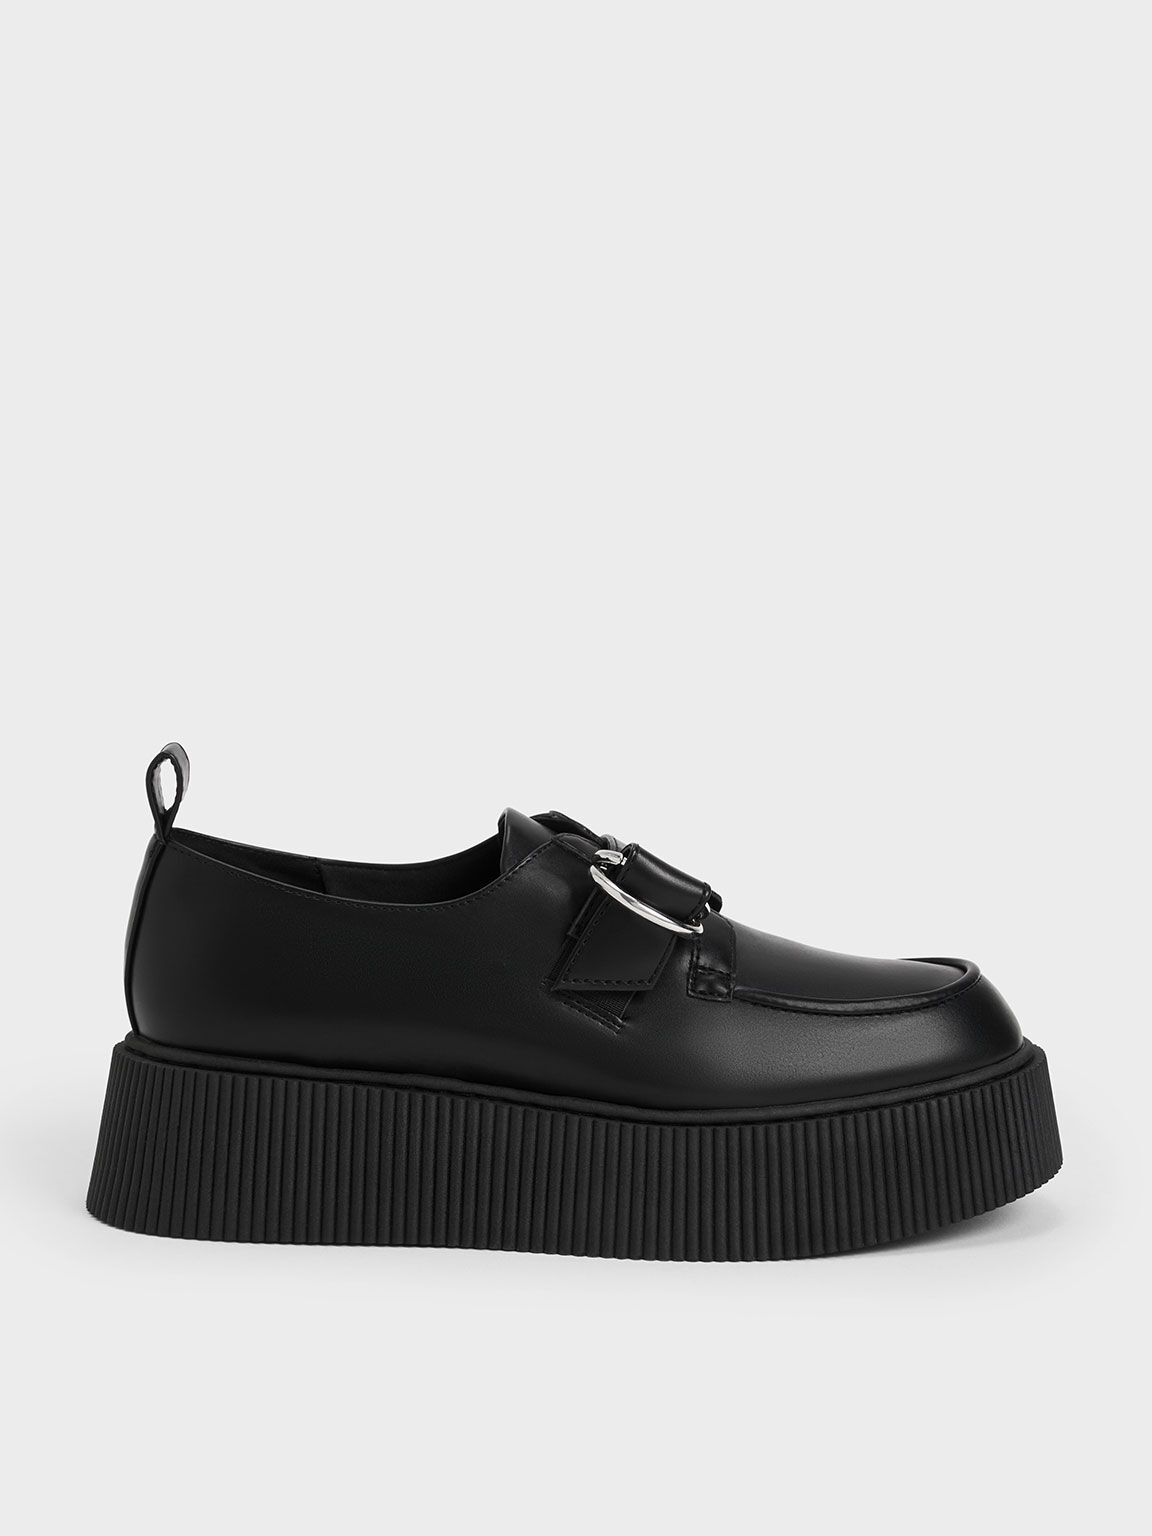 Sepatu Loafers Platform Buckled, Black, hi-res